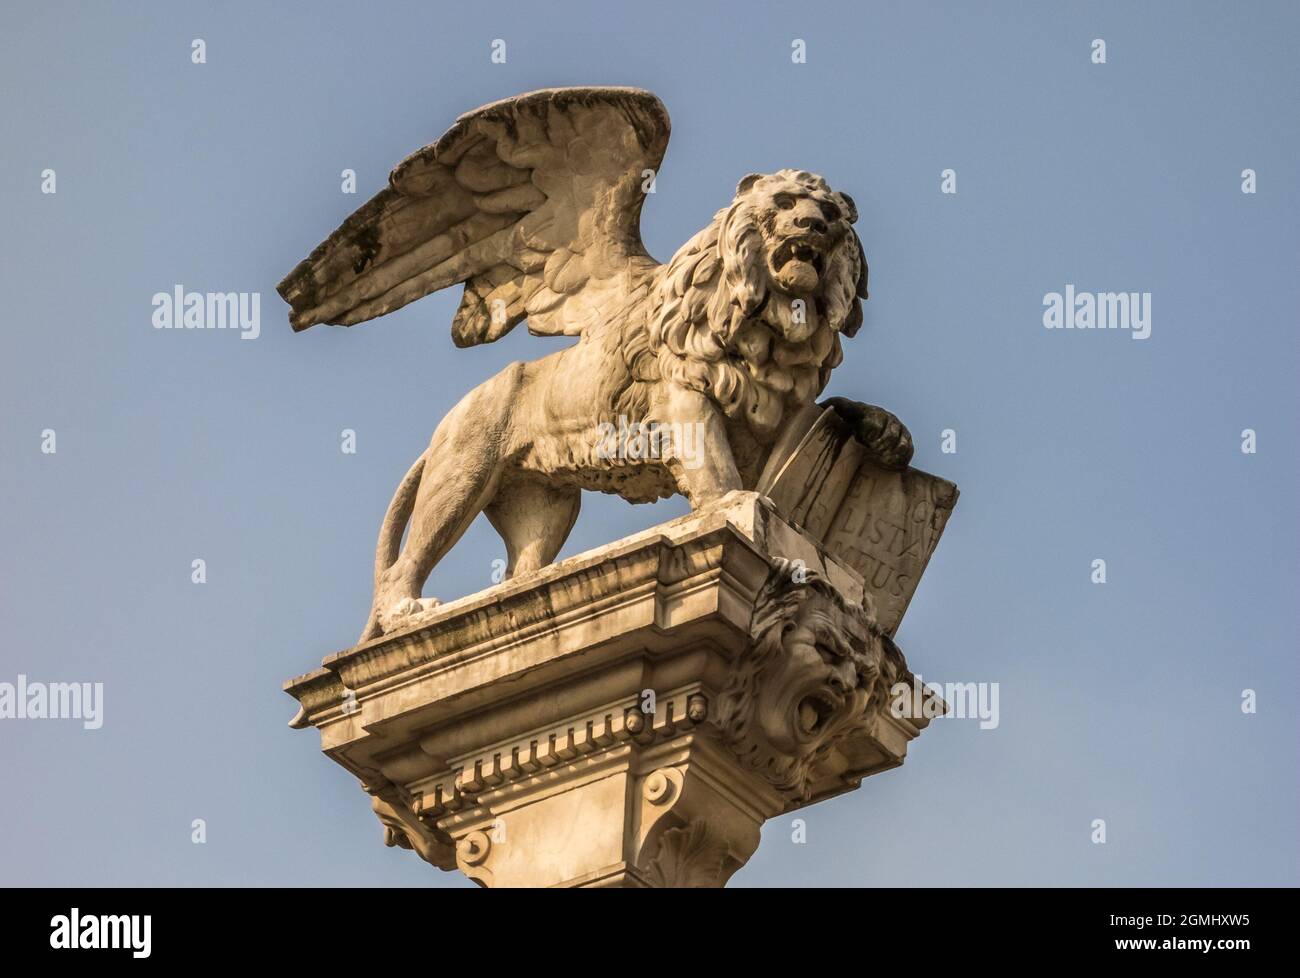 Eine Statue des geflügelten Löwen des heiligen Markus, das Symbol des heutigen Venedig und der ehemaligen Republik Venedig. Stockfoto